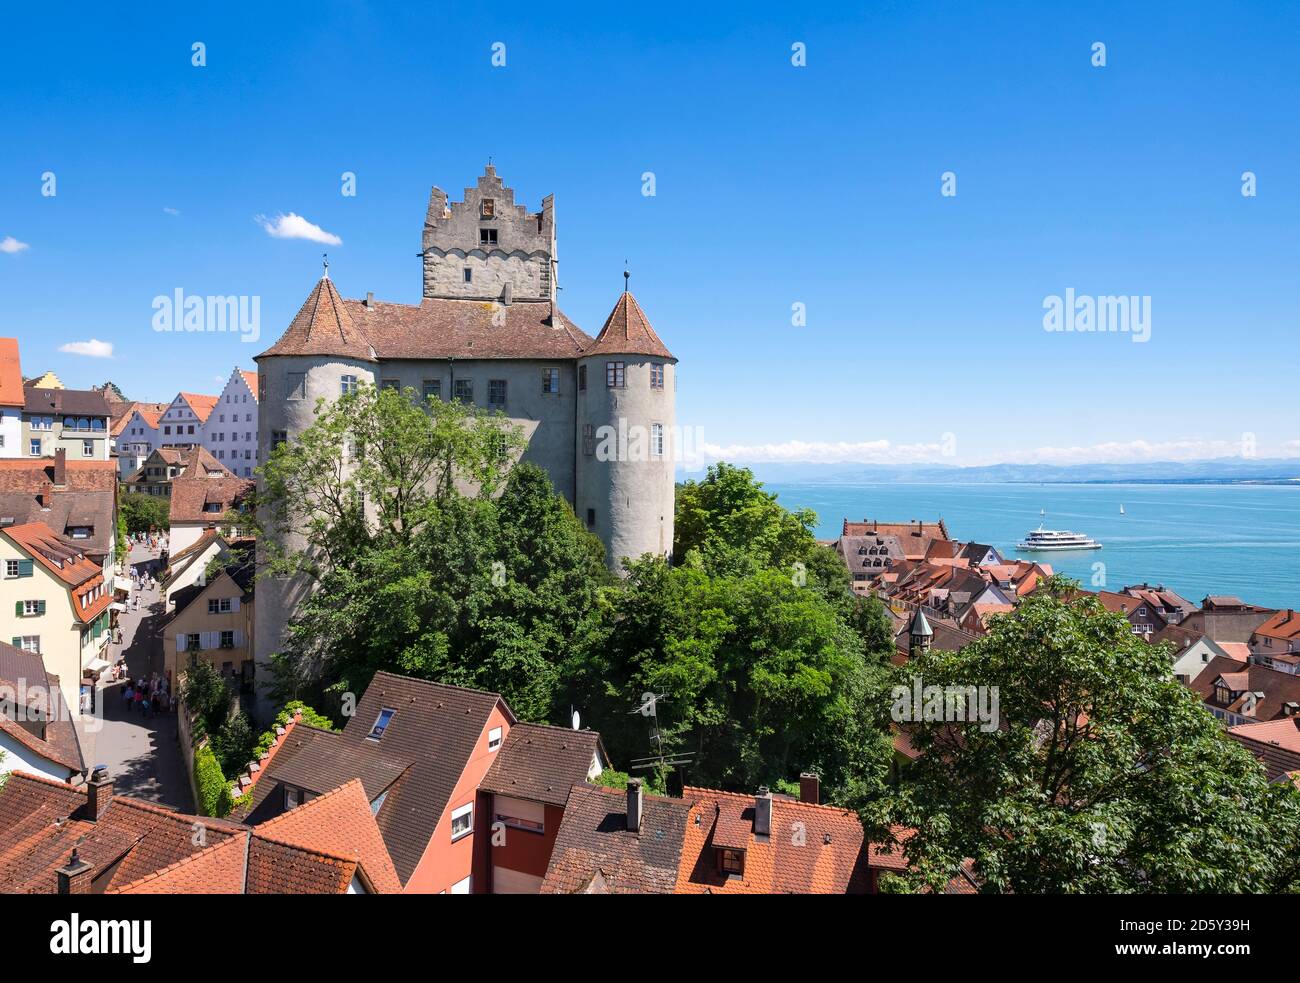 Germania, Meersburg castello presso il lago di Costanza Foto Stock